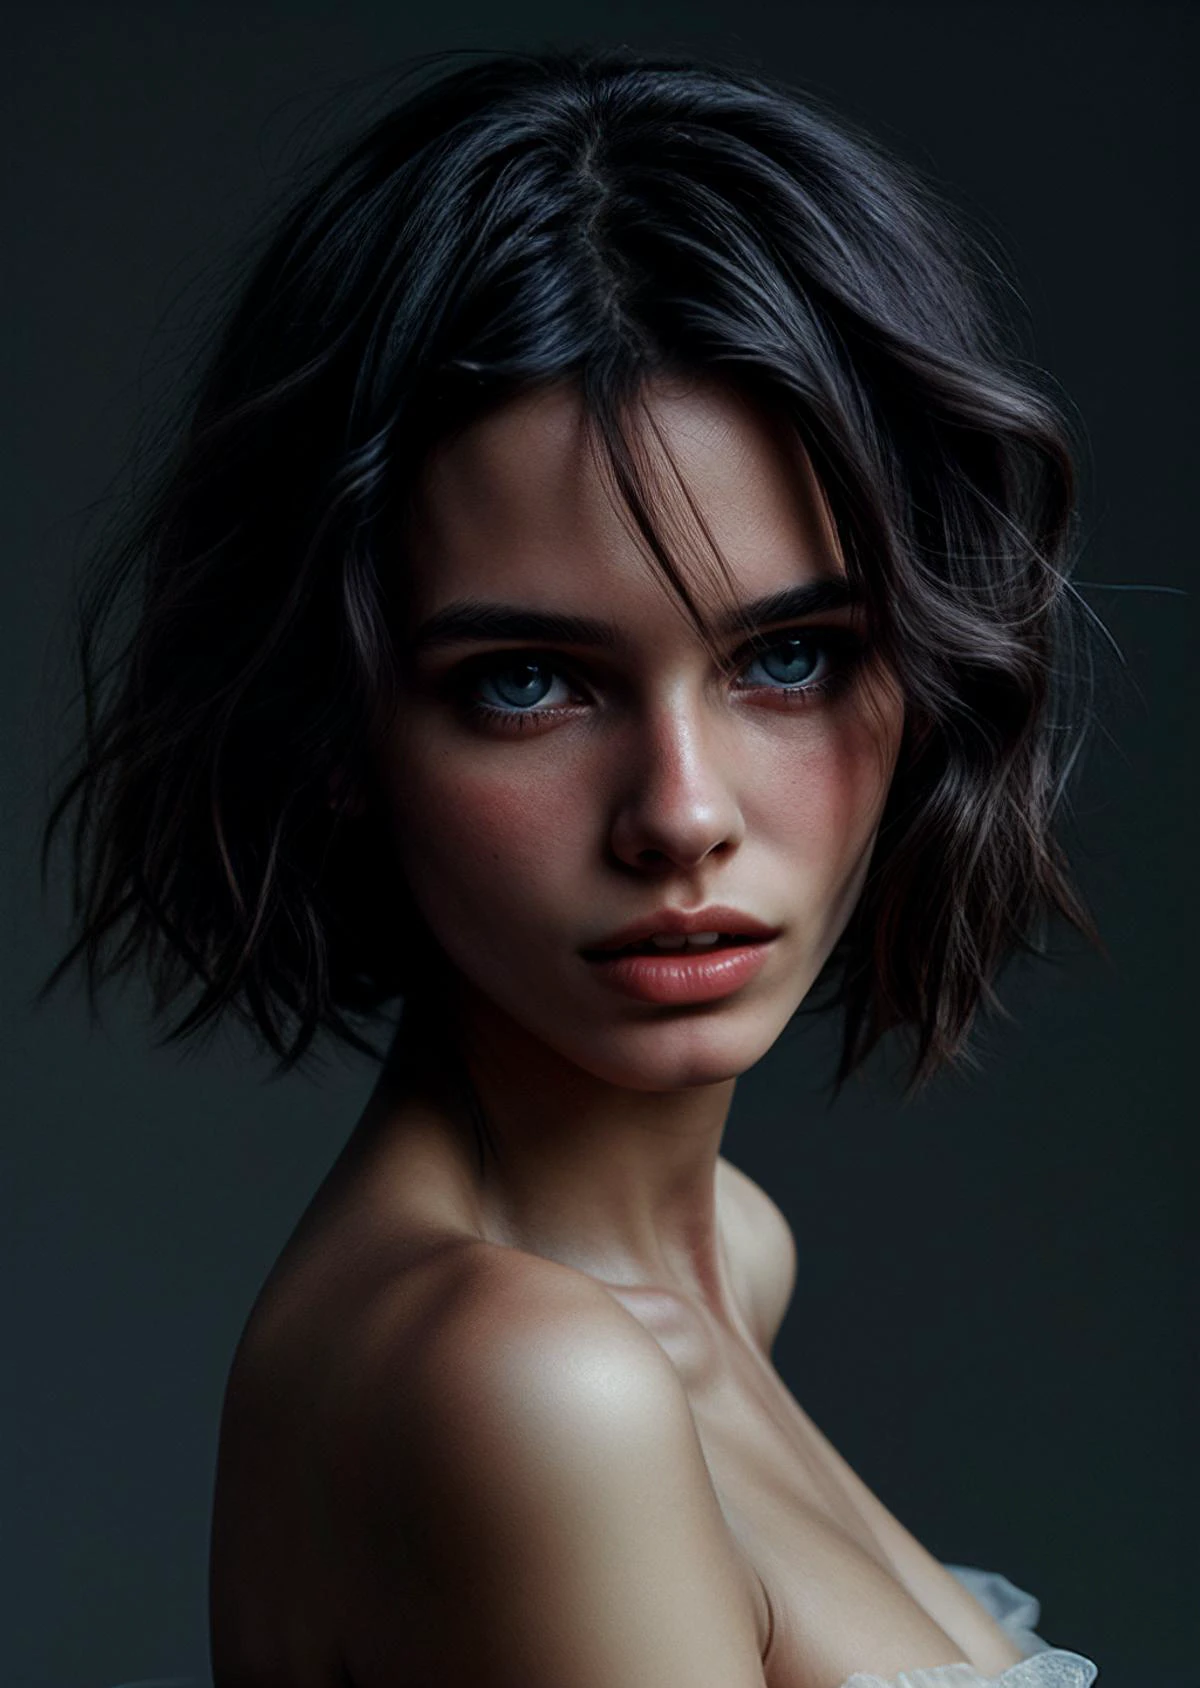 Uma bela e sensual fotografia de David Bellemere retratando uma jovem com aparência de vestido boêmio joh33, olhos detalhados, imagem recortada